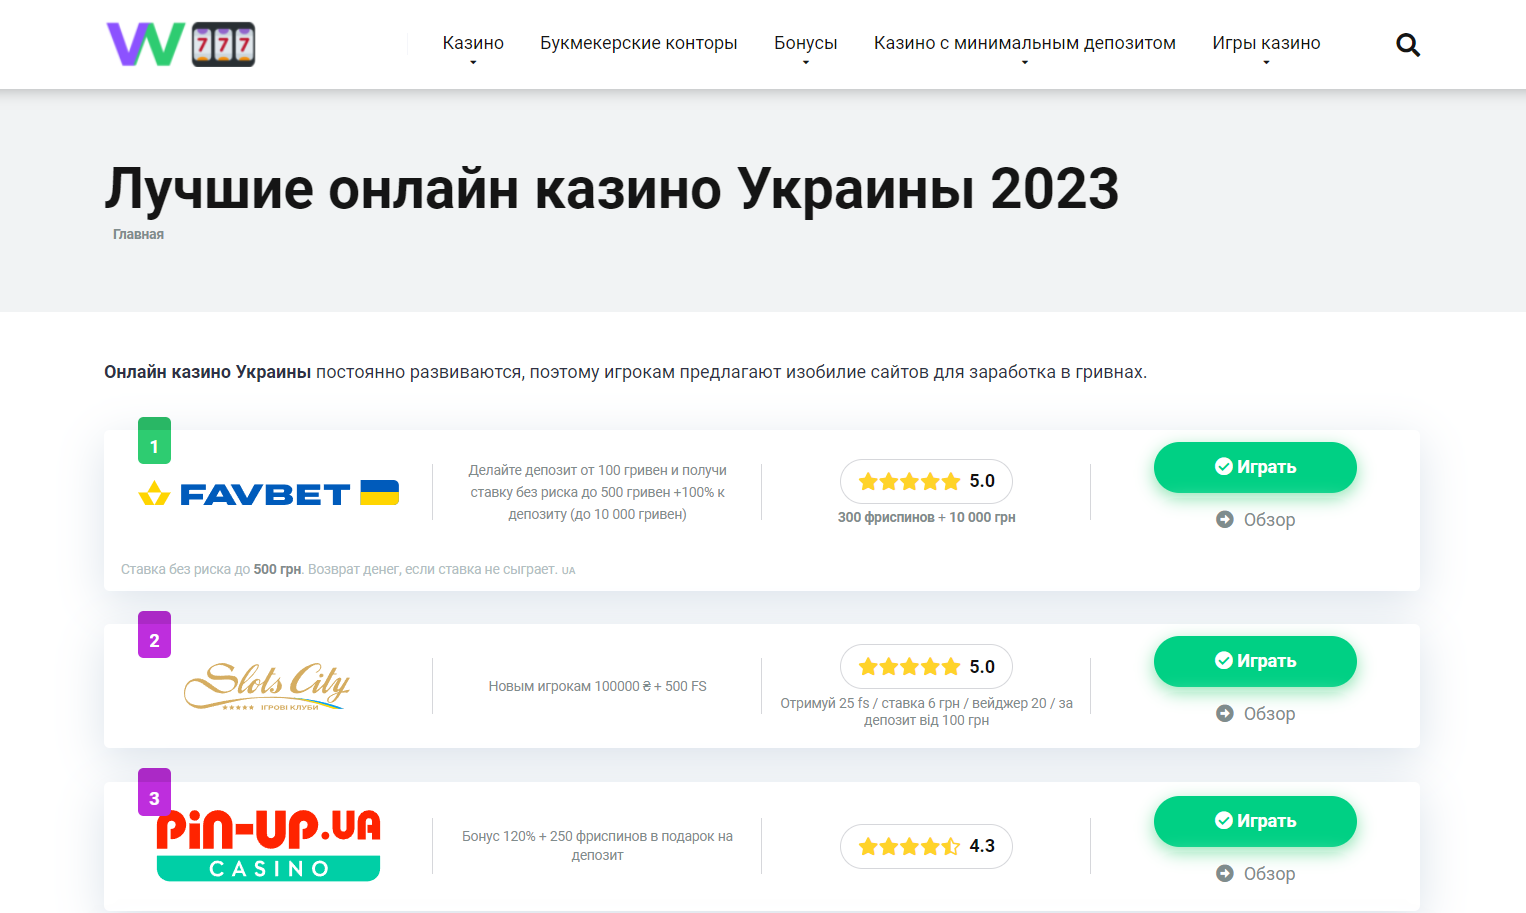 ТОП казино Украины 2023 с действующими лицензиями